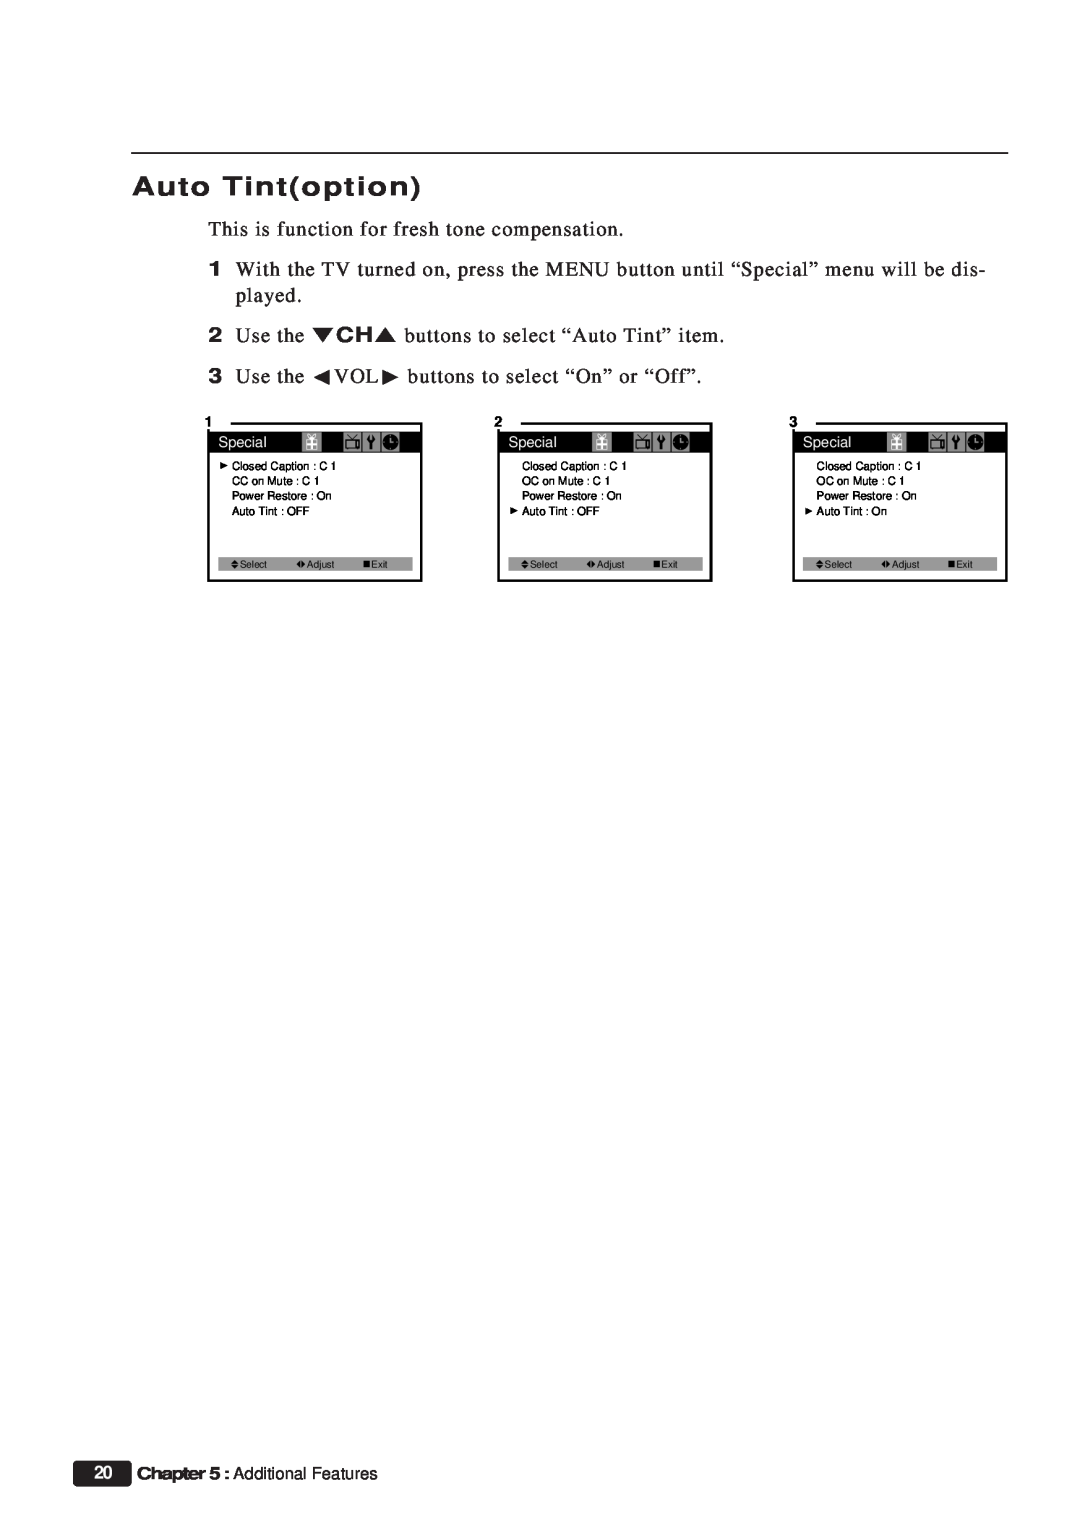 Daewoo ET 13P2, ET 19P2 instruction manual Auto Tintoption, Additional Features 